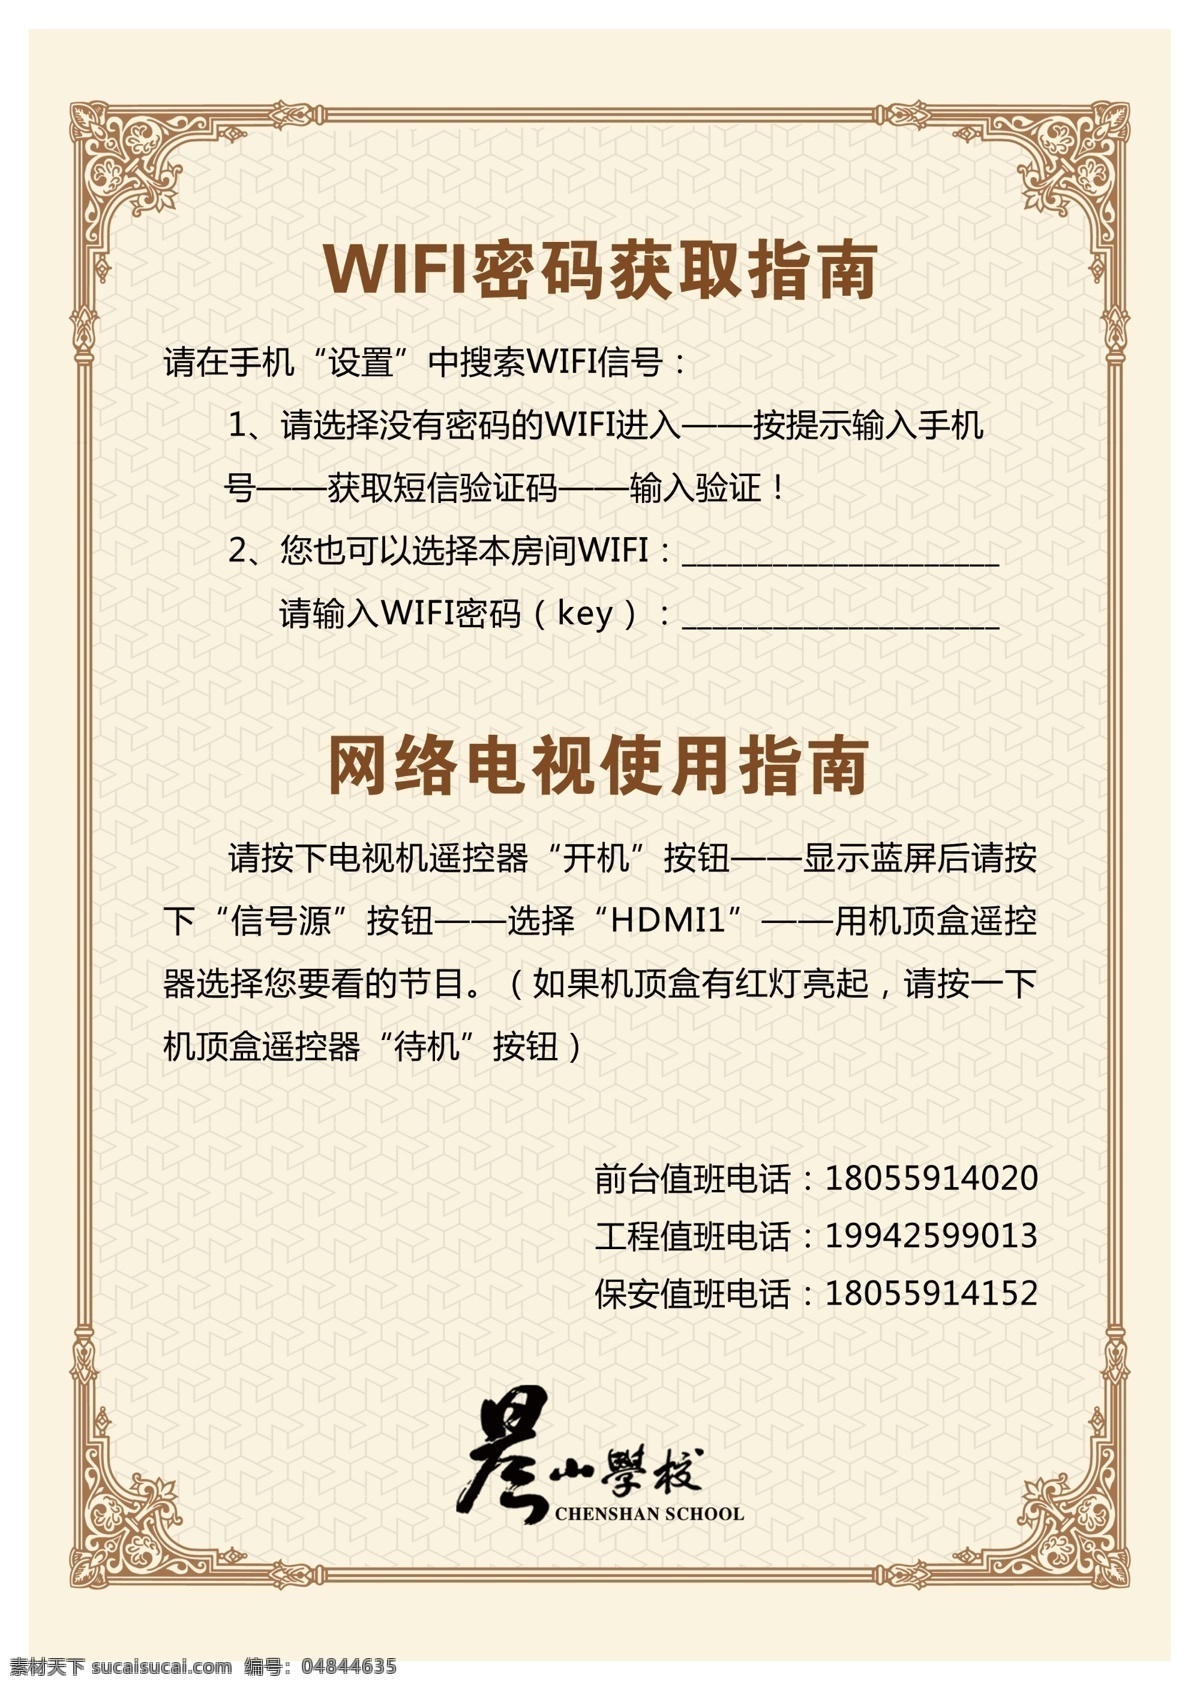 酒店酒水牌 wifi 使用指南 网络电视 立卡 欧式花边 ps源文件